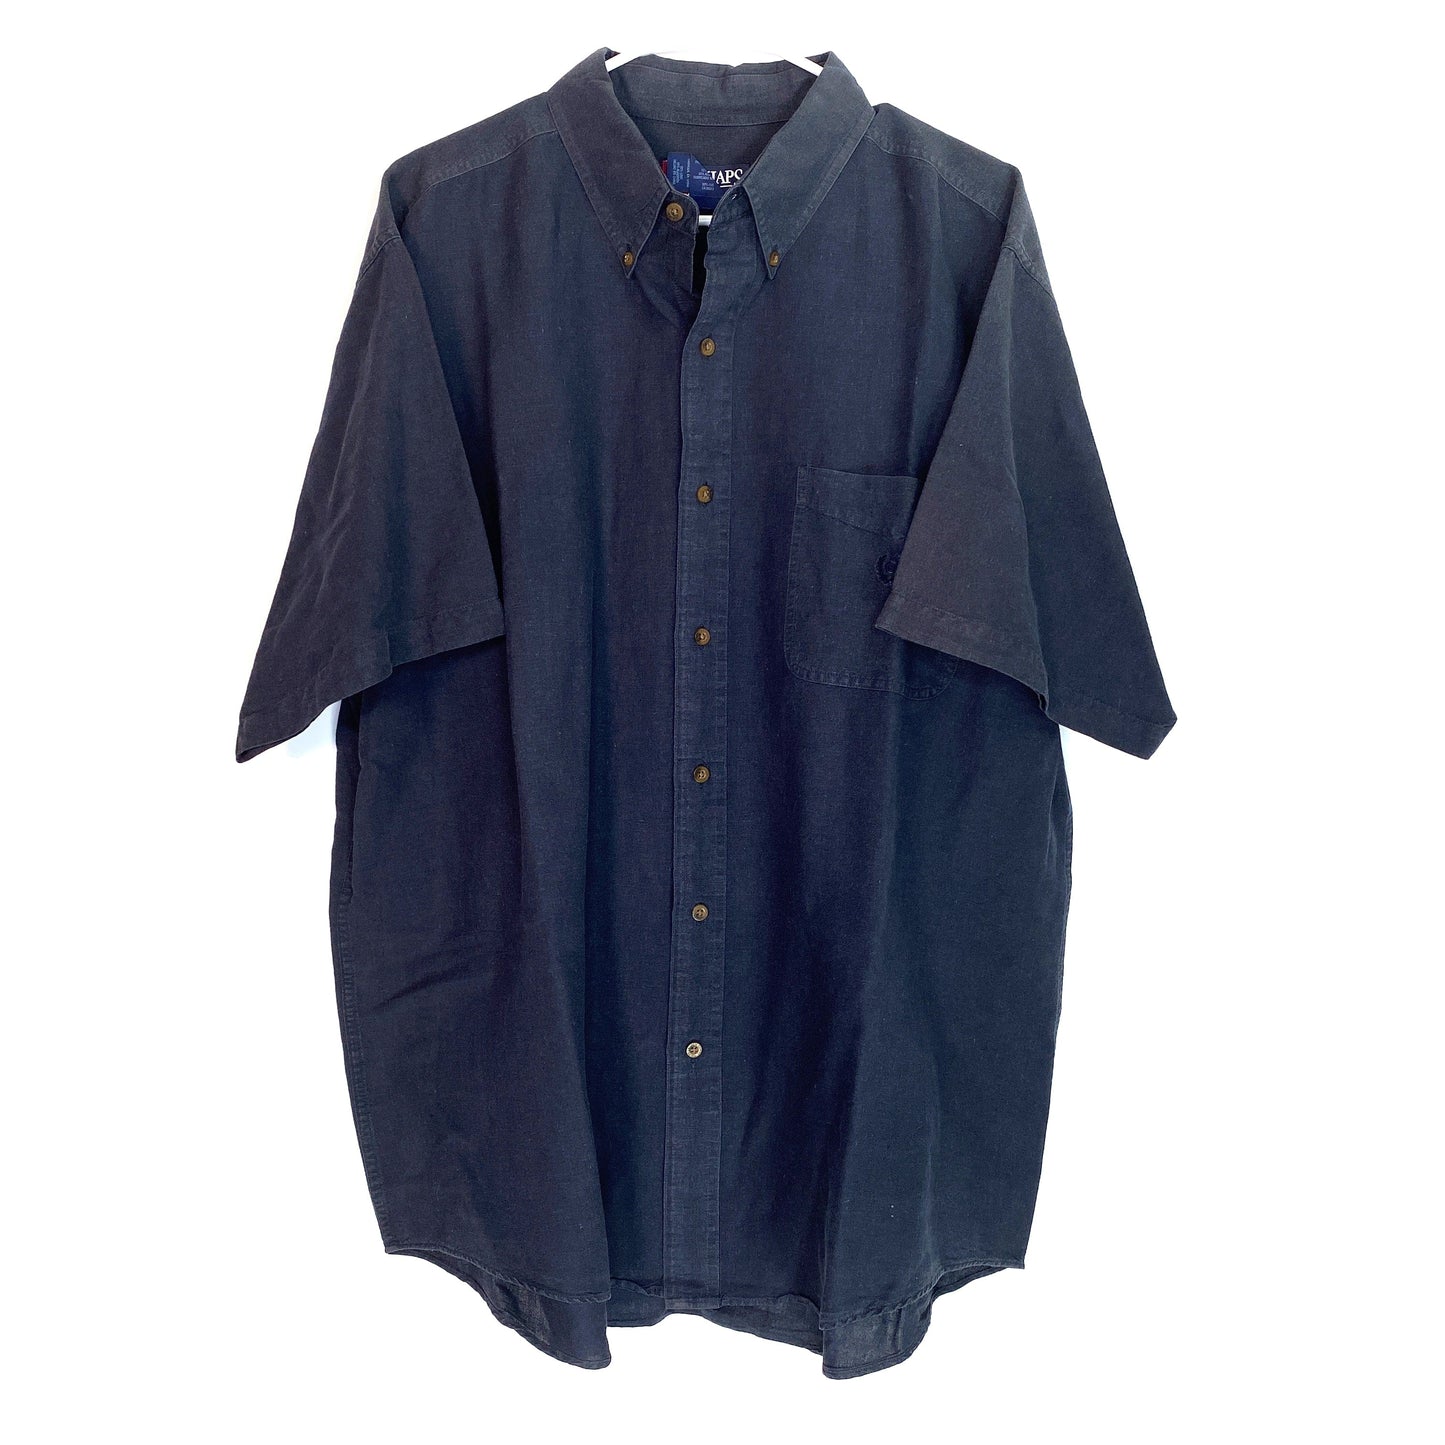 Chaps Ralph Lauren Short Sleeve Button Down Dress Shirt, Dark Blue - Size XL